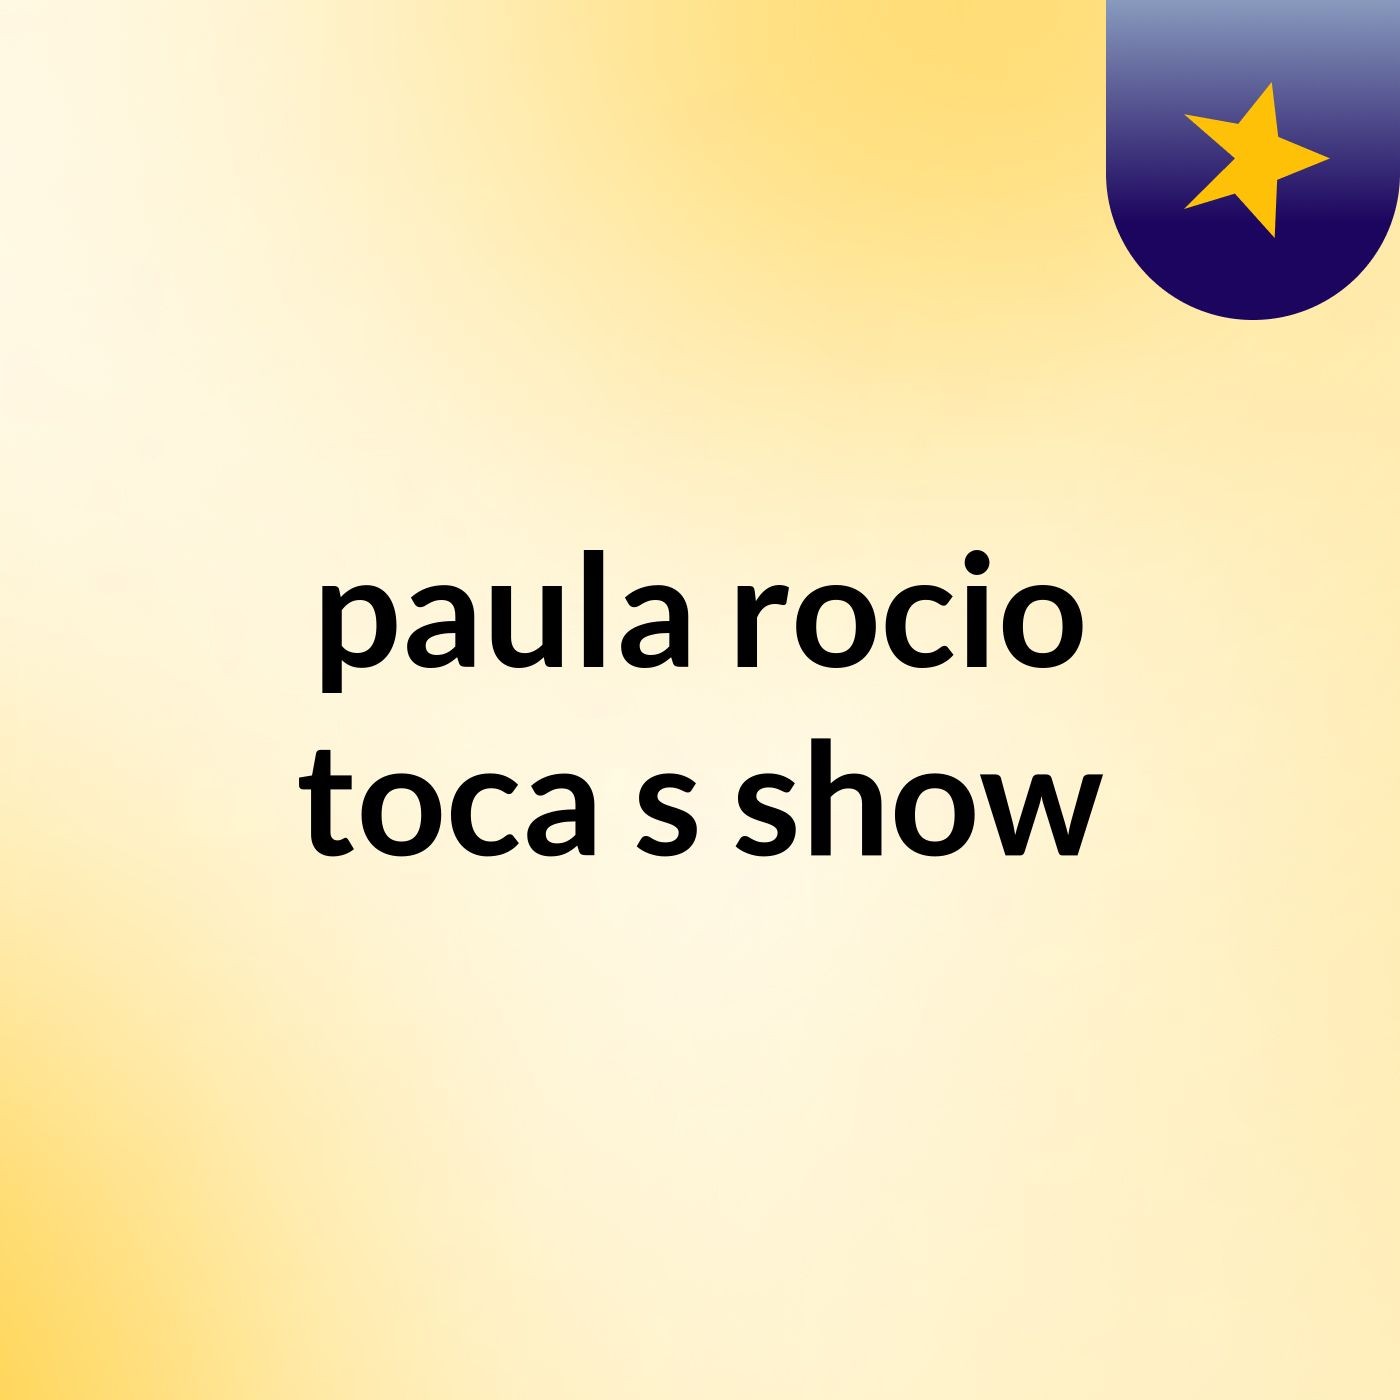 paula rocio toca's show